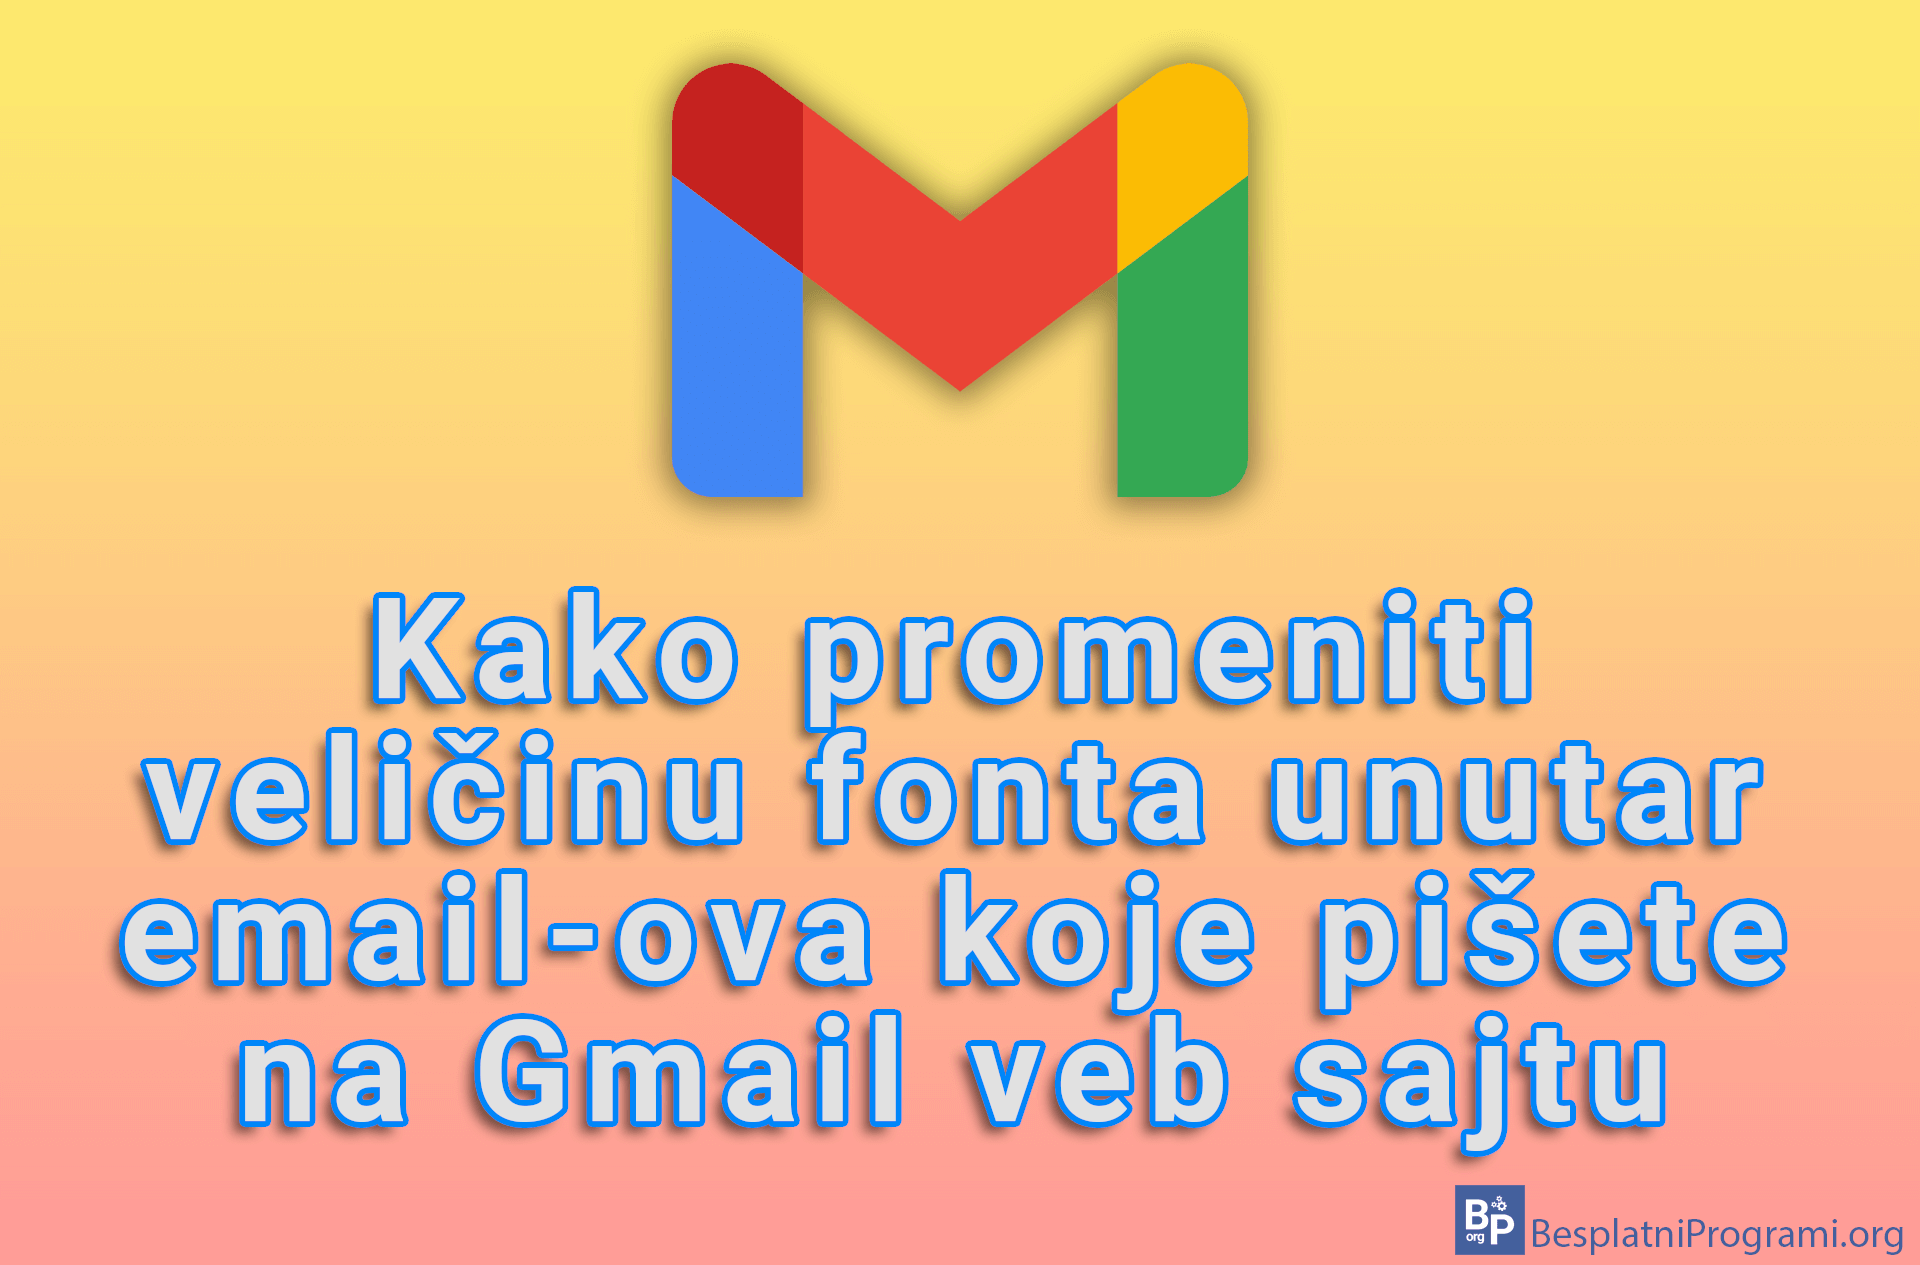 Kako promeniti veličinu fonta unutar email-ova koje pišete na Gmail veb sajtu